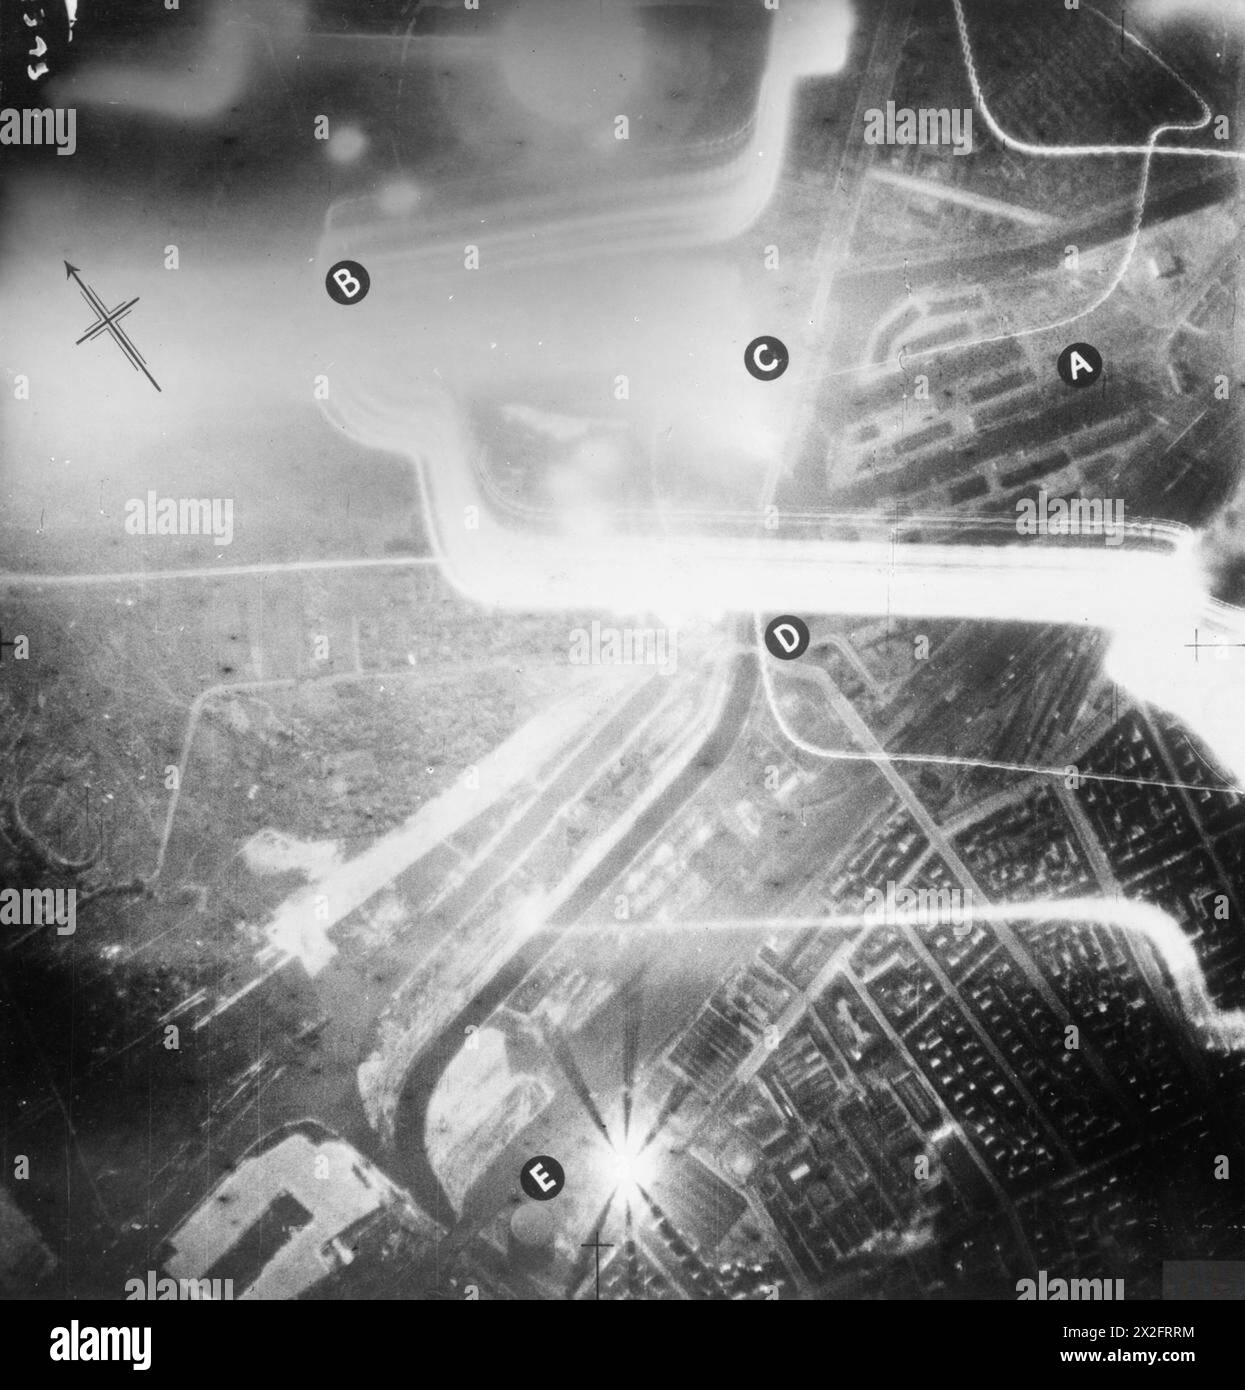 LE INCURSIONI AEREE della RAF CONTRO LA GERMANIA, 1940 - annotarono la vista aerea verticale scattata durante un attacco notturno ai moli di Westhafen, Berlino. Nella notte del 7-8 ottobre 1940, 42 aerei dei gruppi 3 e 4 bombardarono 12 bersagli individuali nella capitale tedesca per la perdita di un Vickers Wellington. Le ampie strisce di luce sono proiettori tedeschi, quelli sottili sono gusci traccianti. I moli sono chiaramente visibili ("A'), illuminati dall'esplosione di una bomba sul porto interno del canale navale di Spandau ("C"). Altre caratteristiche scelte includono il ponte Koenigs Damm sul canale Verbindunge ('D') A. Foto Stock